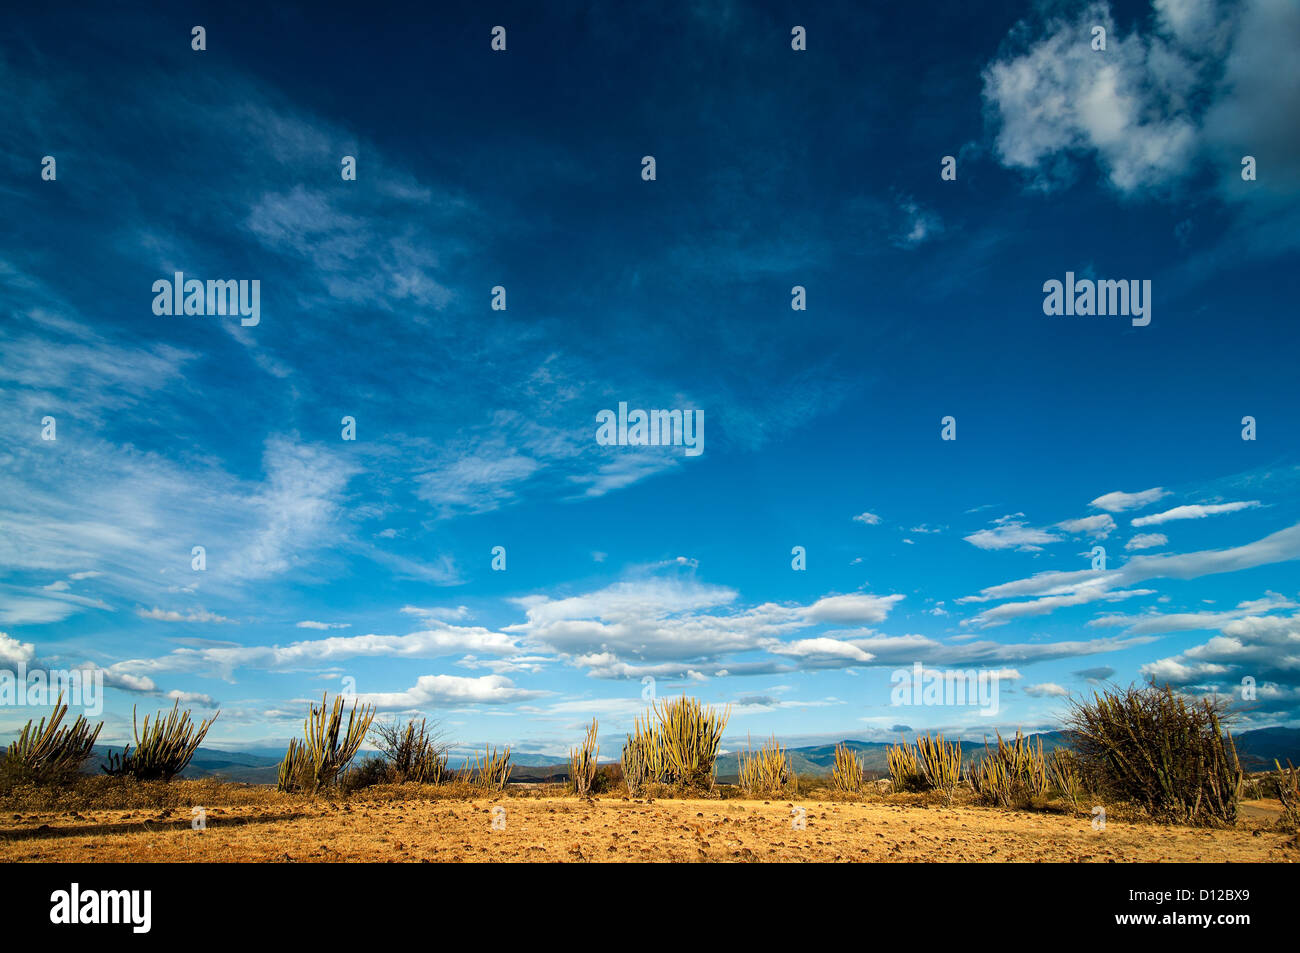 Ein Blick auf eine Wüste in Kolumbien mit einem tiefblauen Himmel. Stockfoto